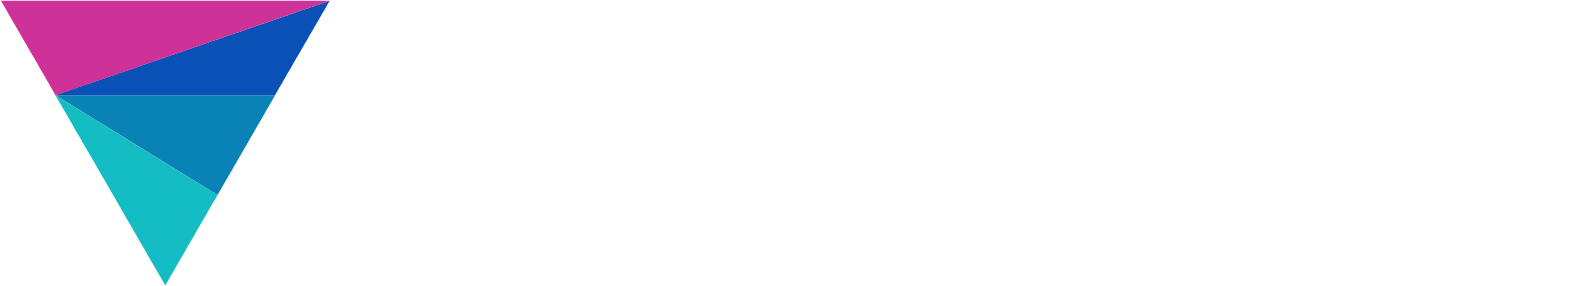 Vivid Seats logo large for dark backgrounds (transparent PNG)